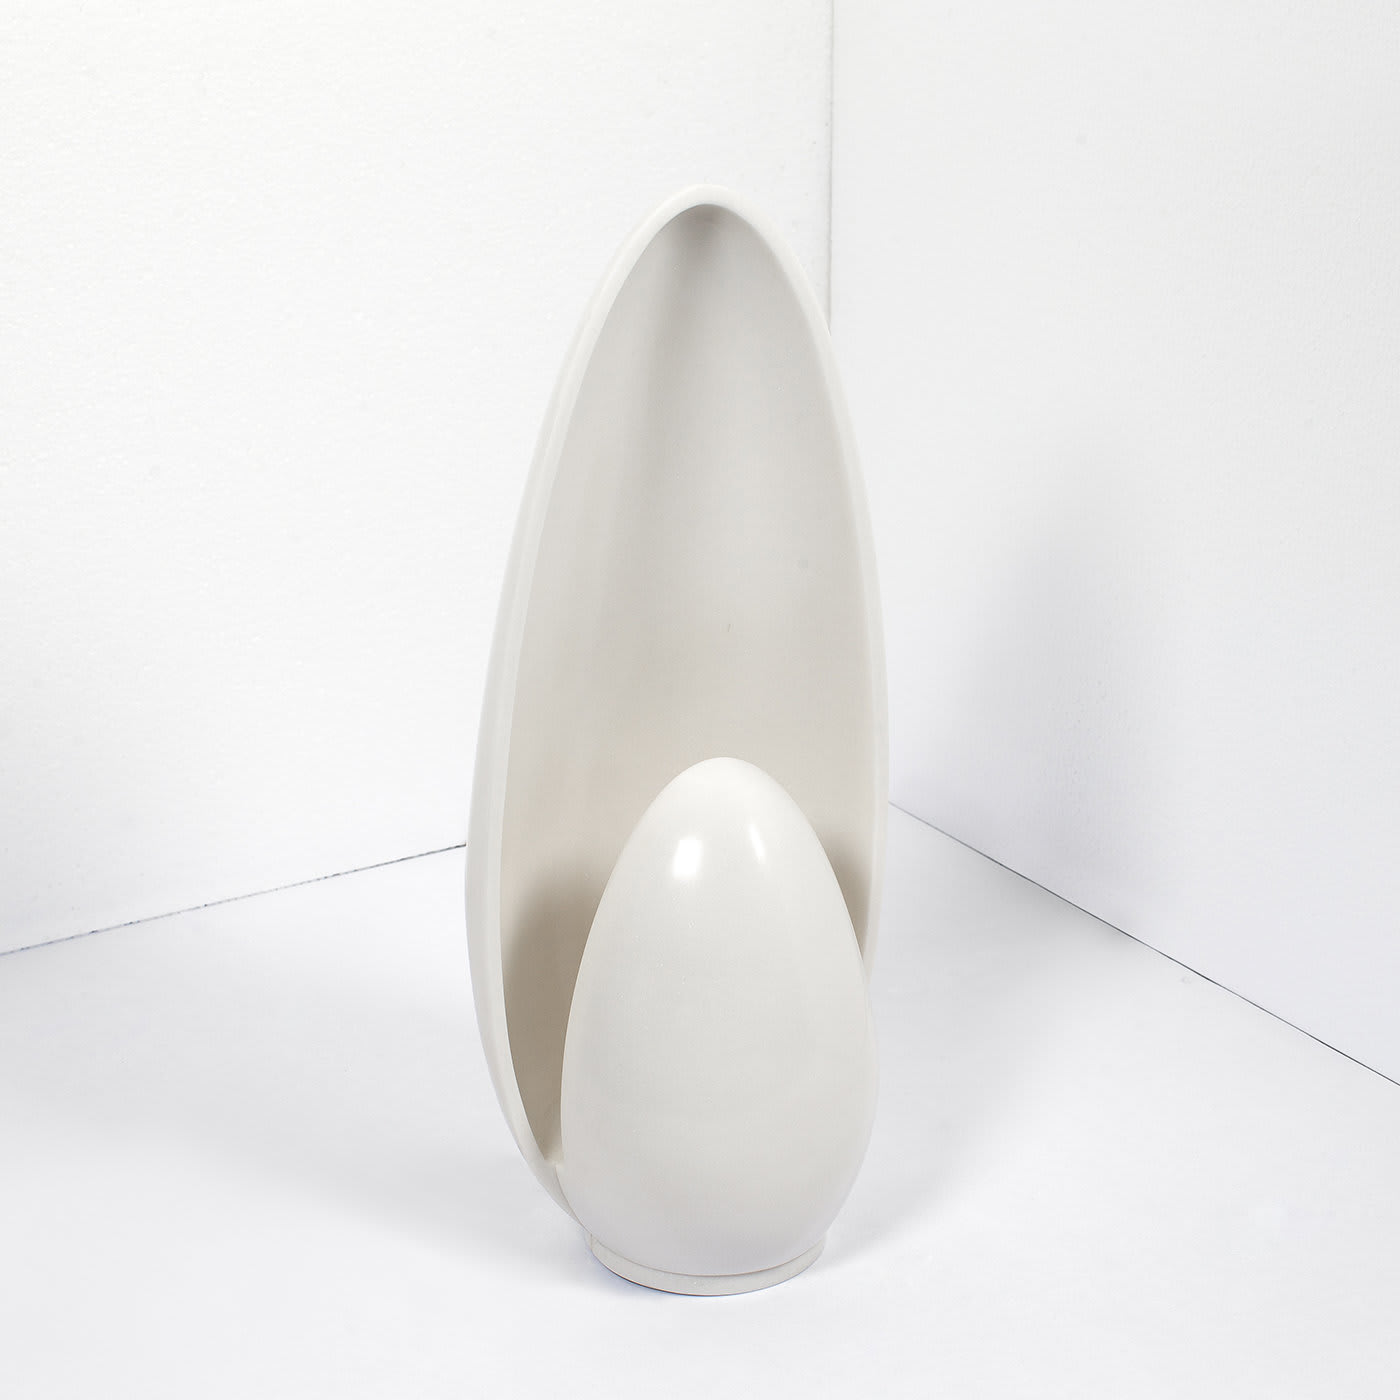 Da Vinci Table Lamp - Fuda Marmi by Atelier Design Lab